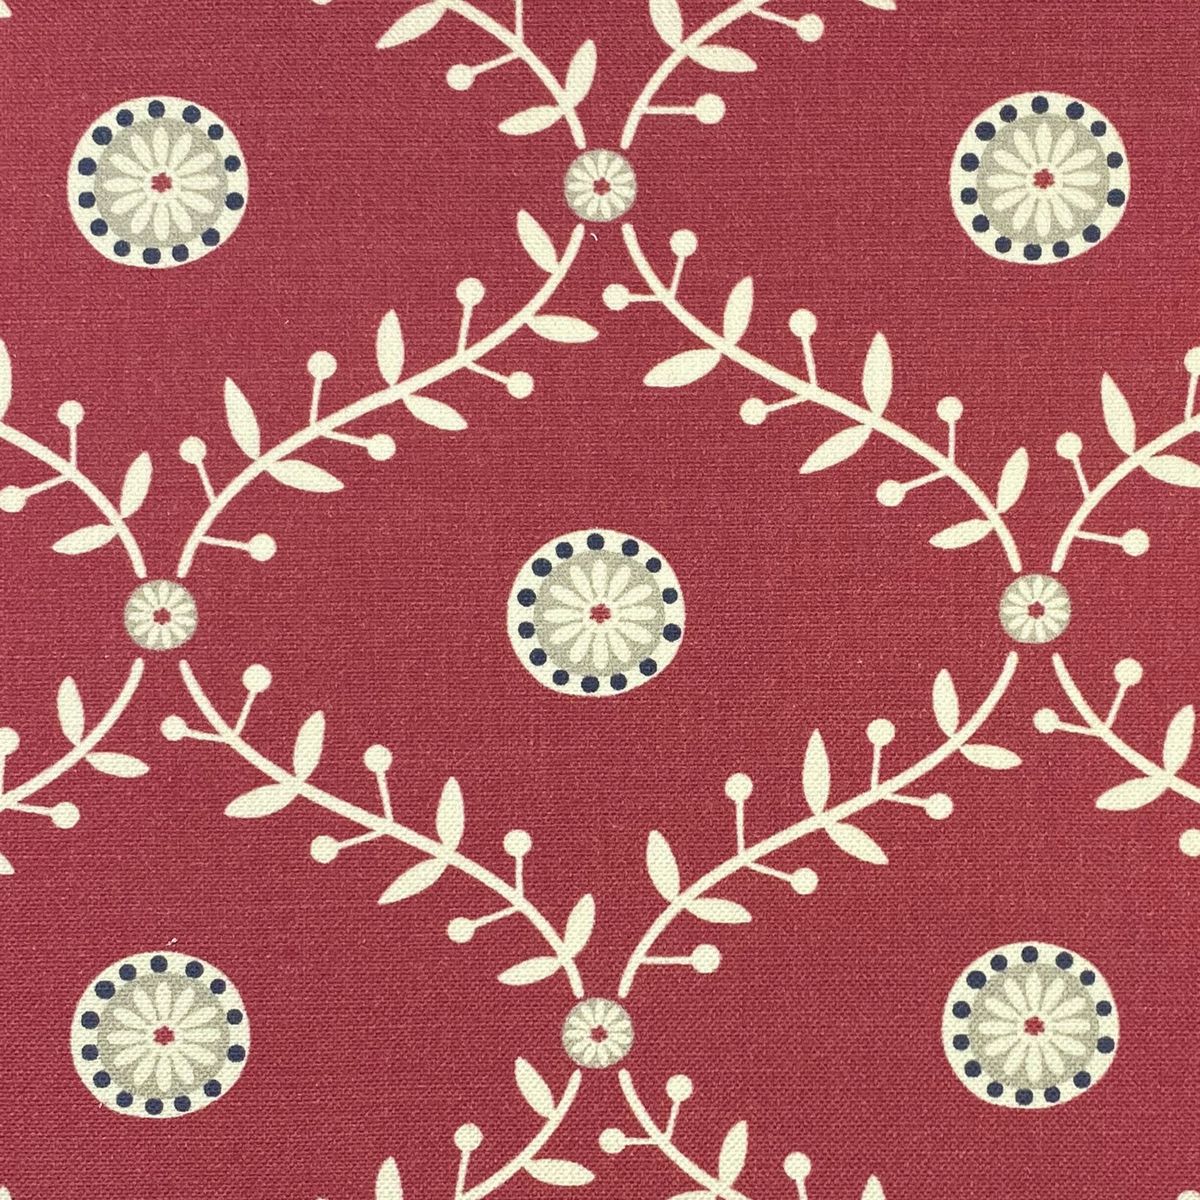 Bluntington Raspberry Fabric by Chatham Glyn